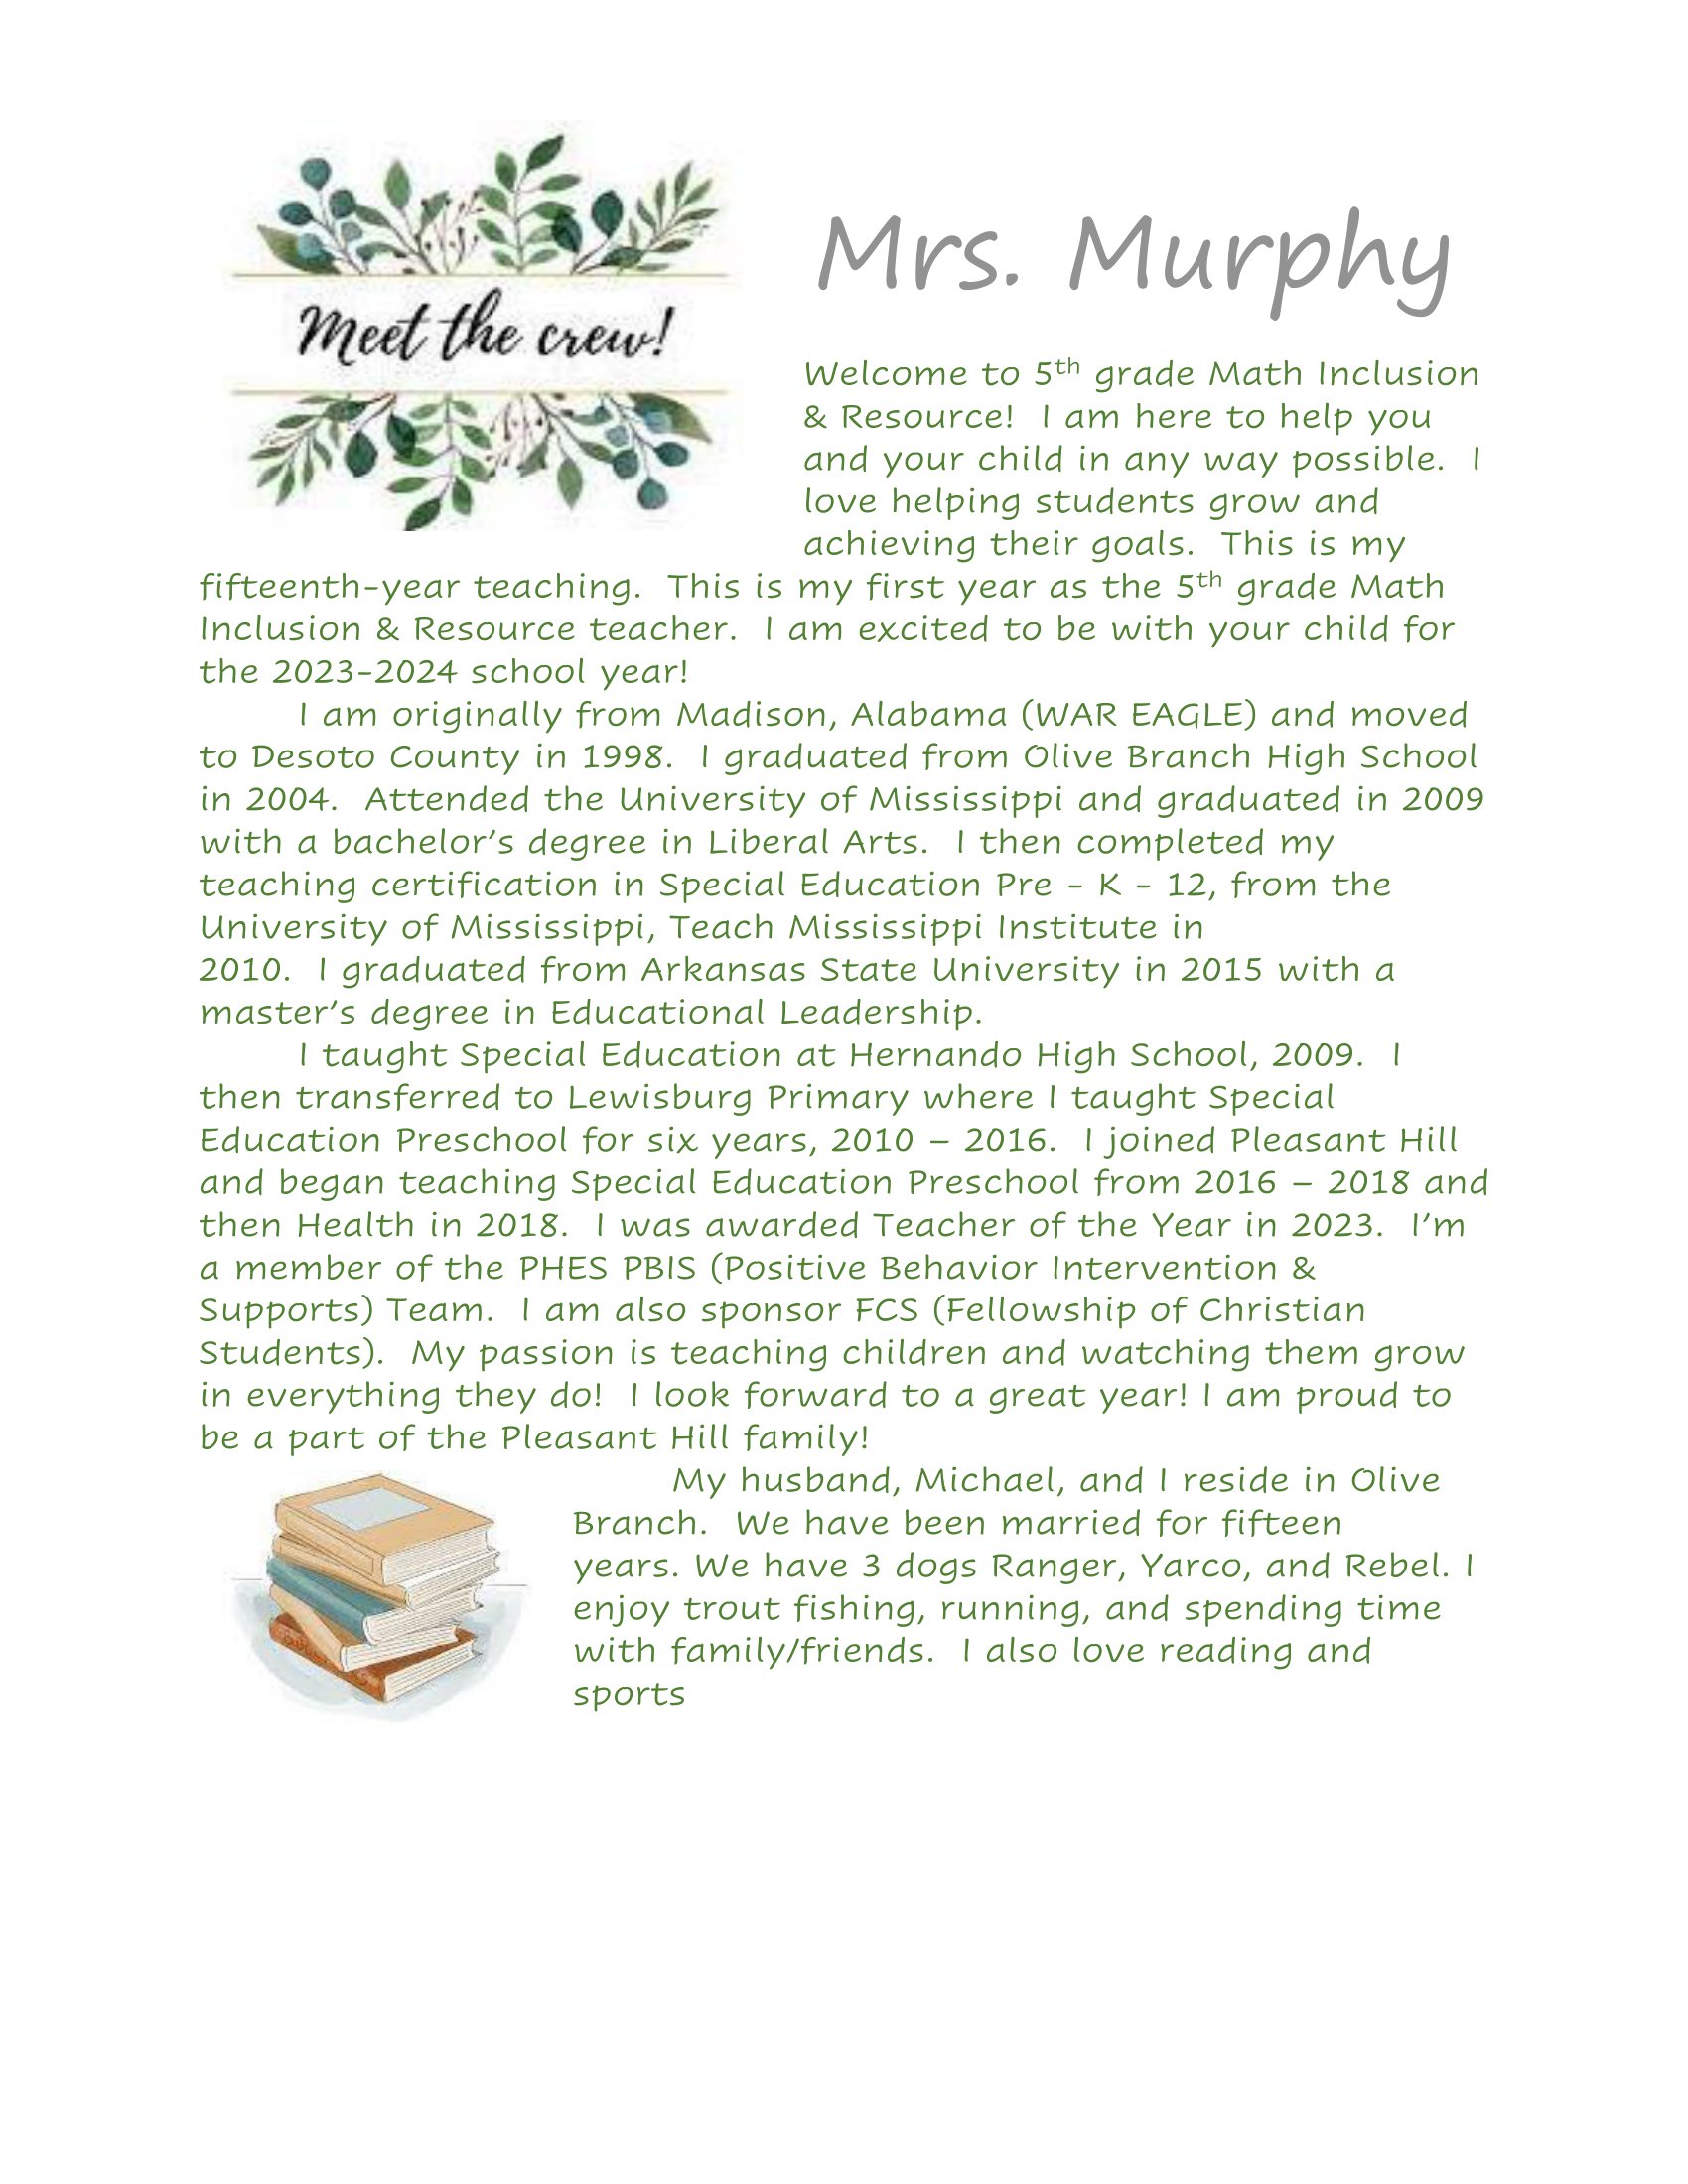 Murphy Biography